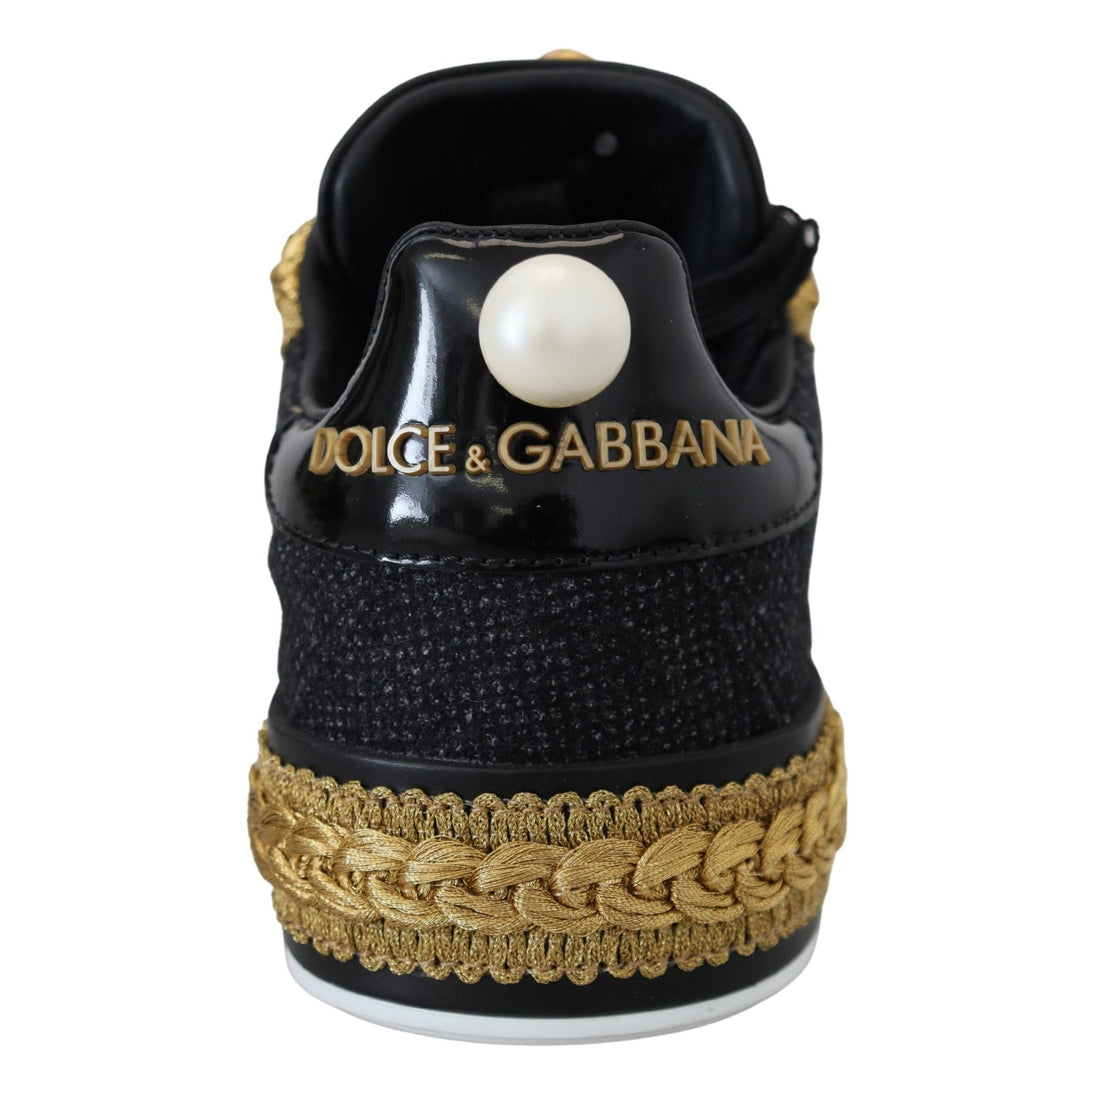 Dolce & Gabbana Elegant Portofino Leather Sneakers in Black